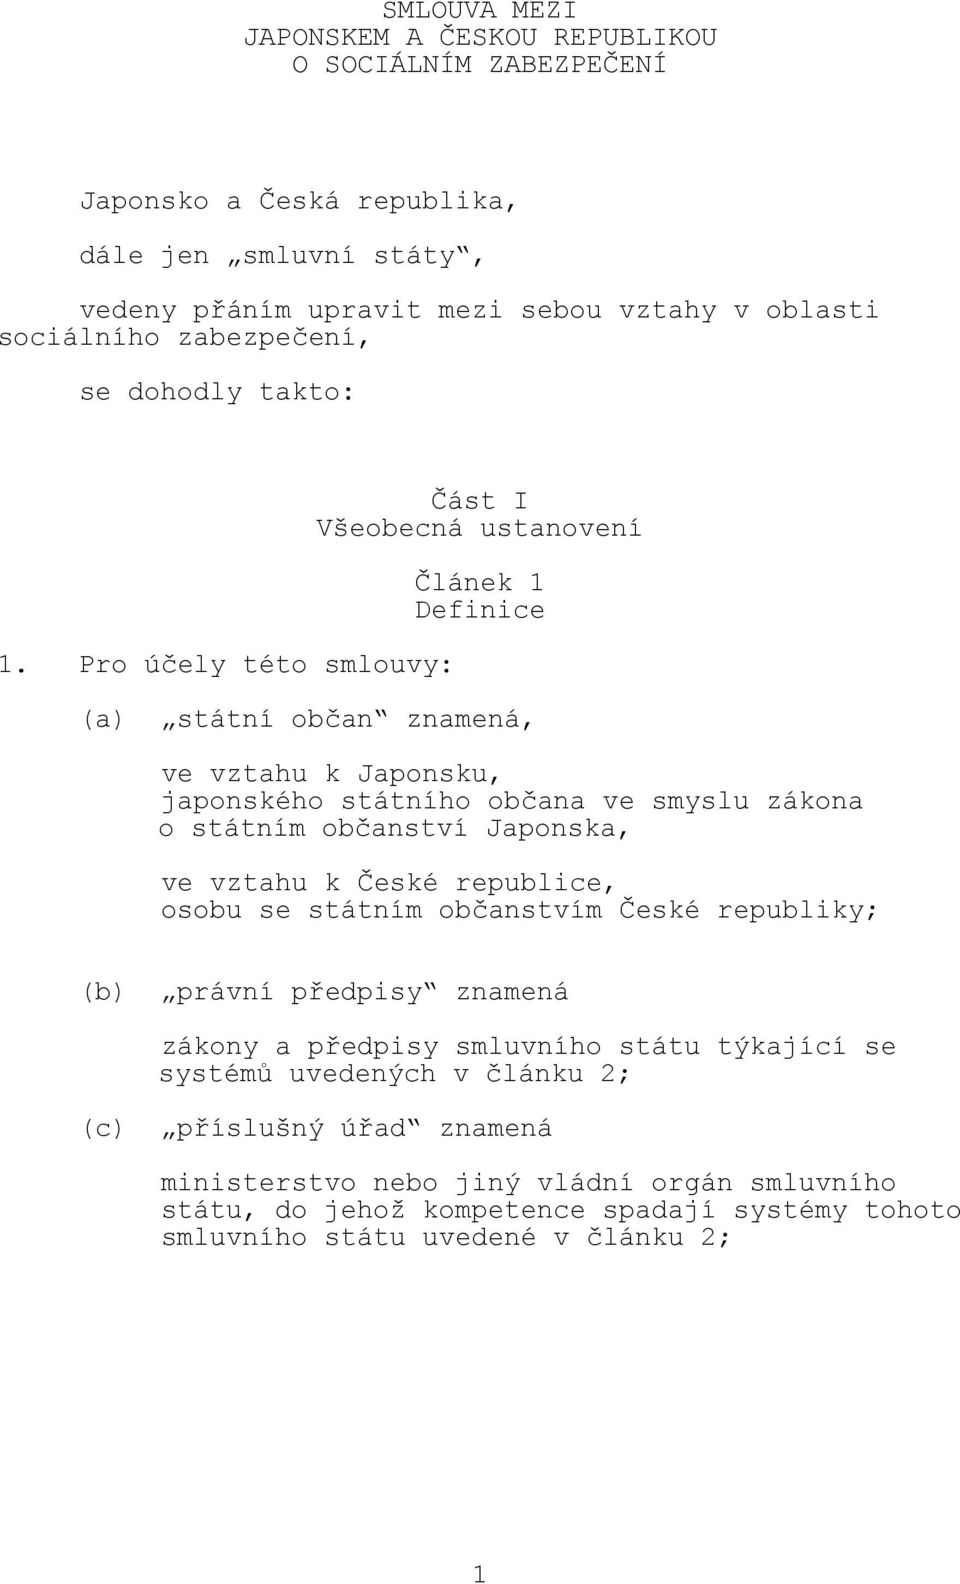 Pro účely této smlouvy: Část I Všeobecná ustanovení Článek 1 Definice (a) státní občan znamená, ve vztahu k Japonsku, japonského státního občana ve smyslu zákona o státním občanství